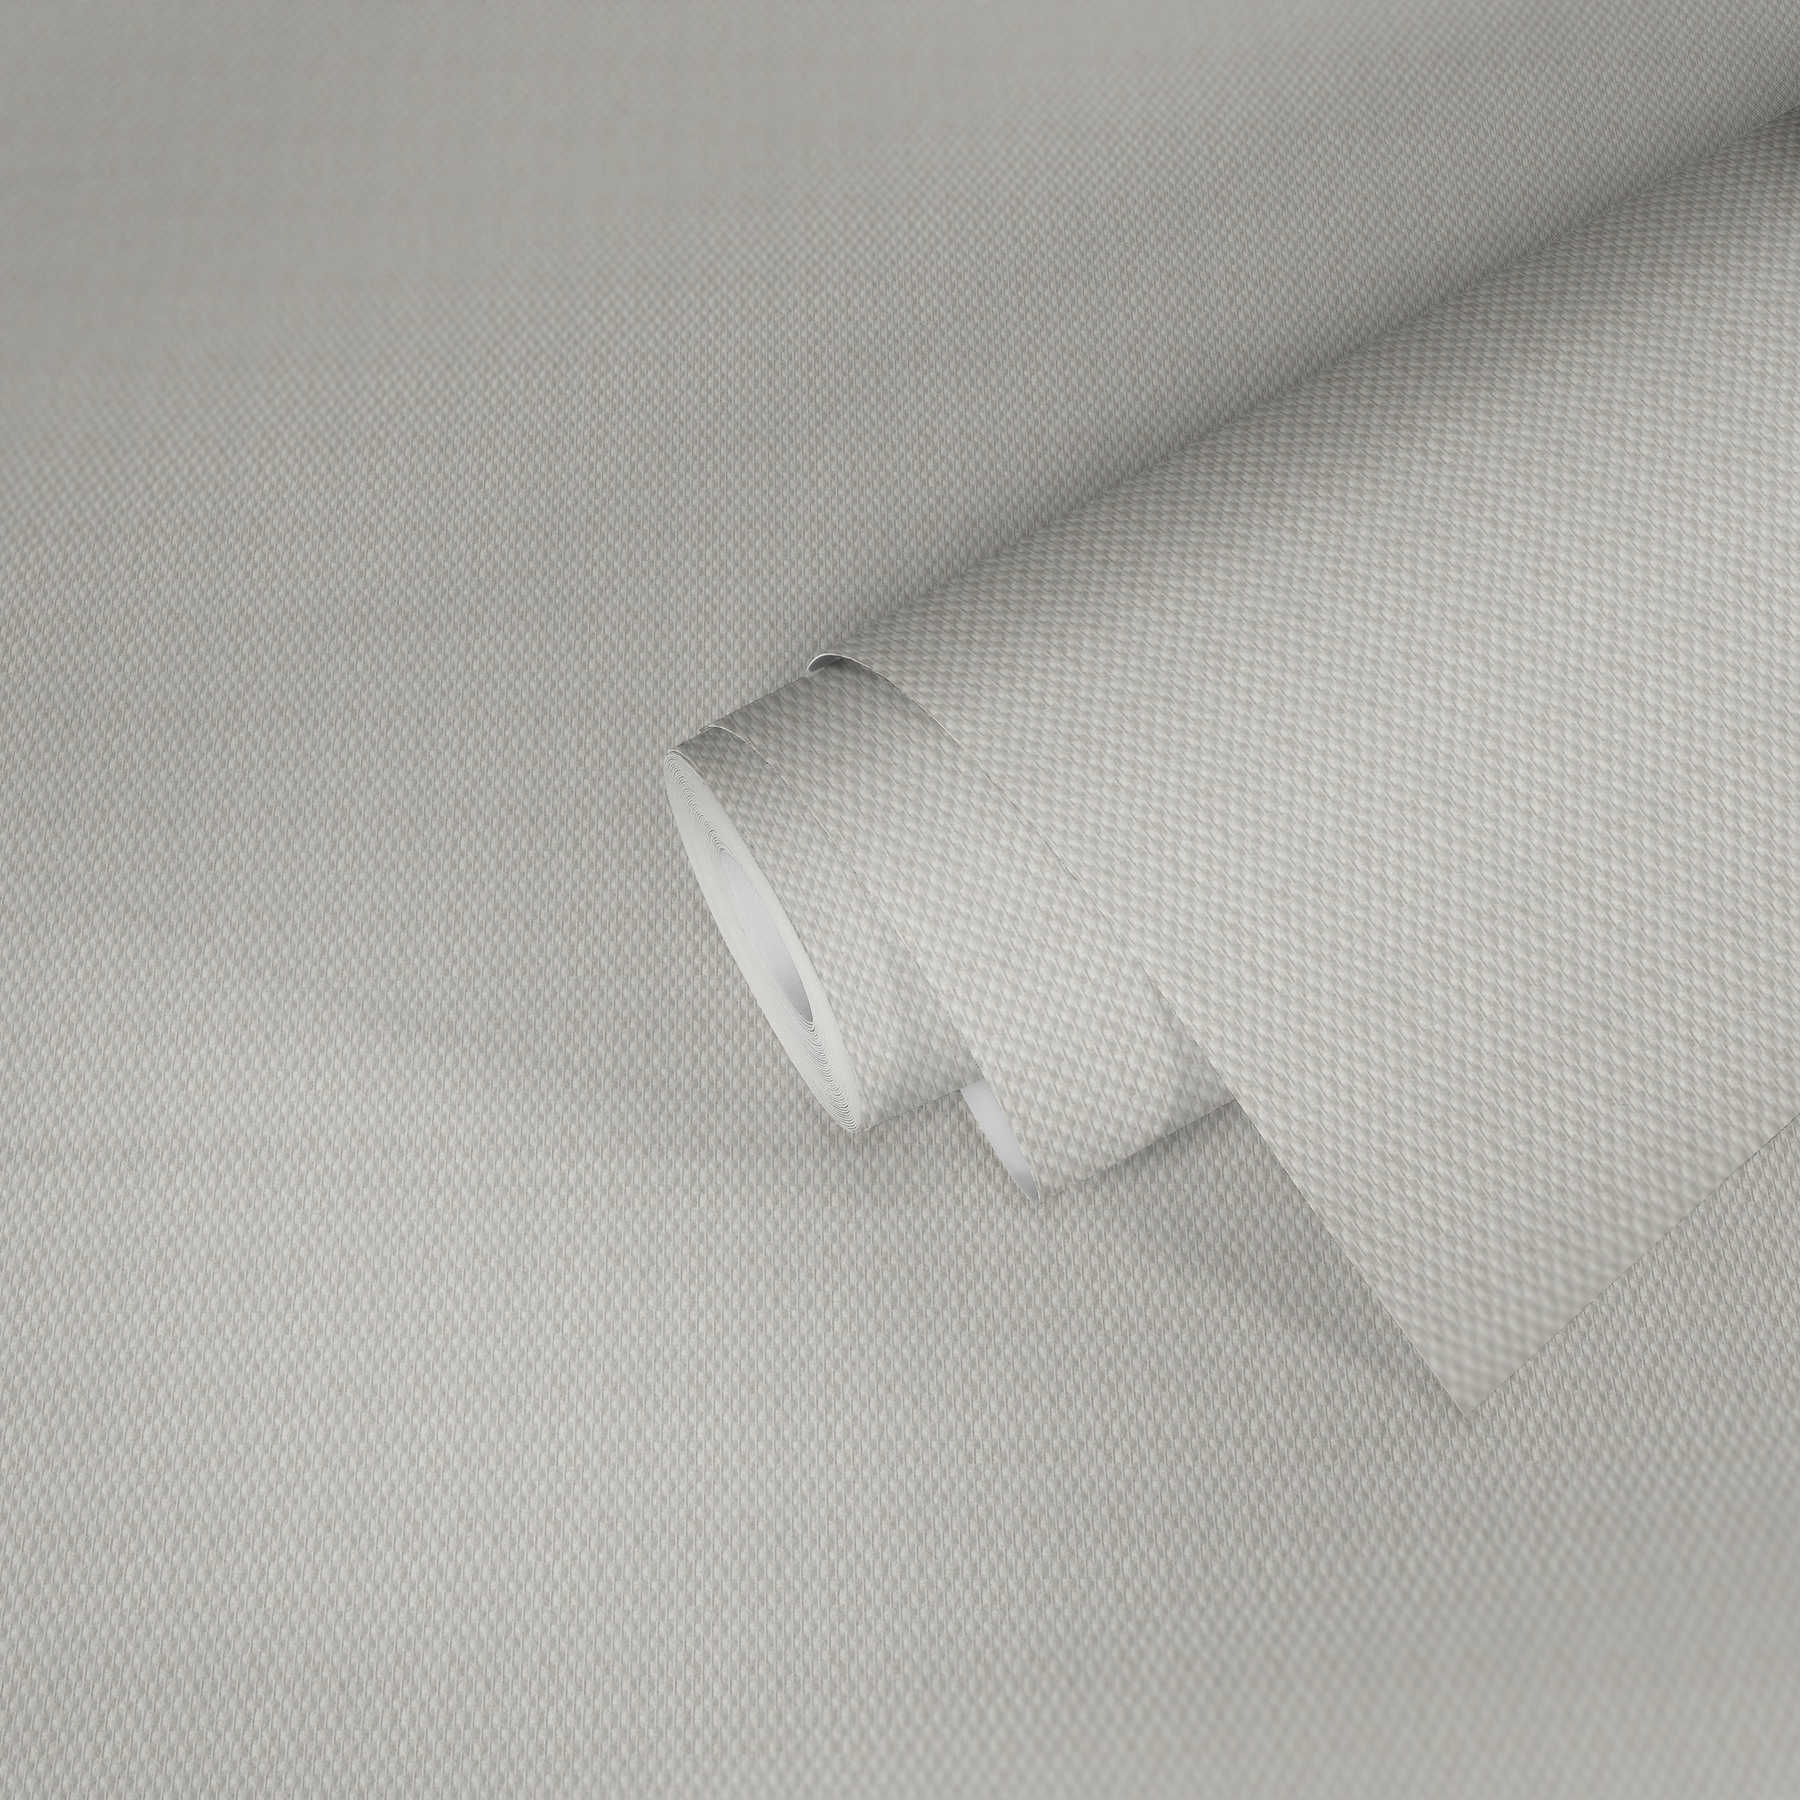             papier peint en papier en fibres de verre avec double chaîne fine - dimensionnellement stable , peut être peint plusieurs fois
        